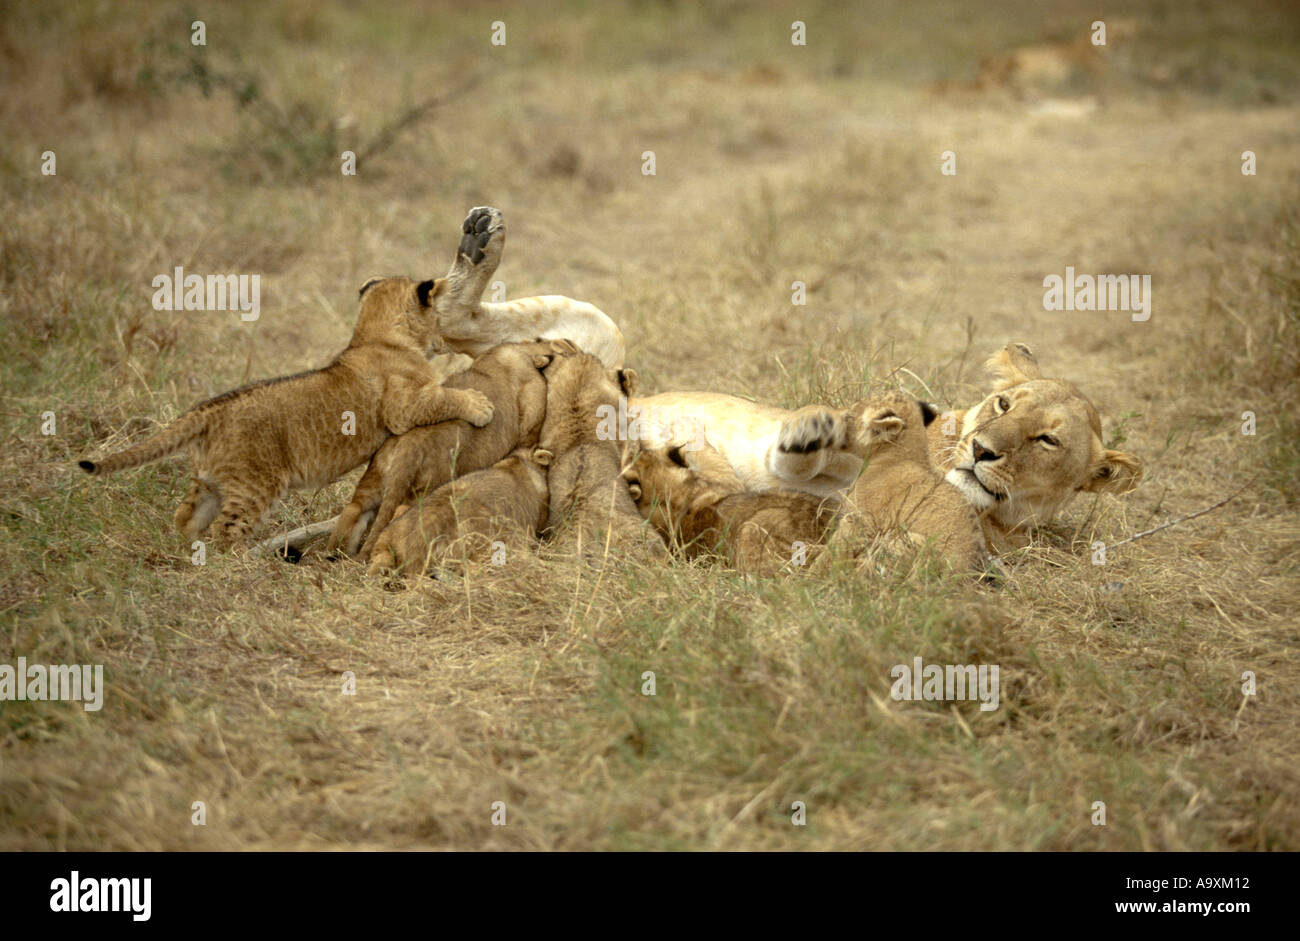 L'African lion (Panthera leo), cinq infirmiers lionne lionceaux, Kenya, Masai Mara National Reserve, novembre01. Banque D'Images